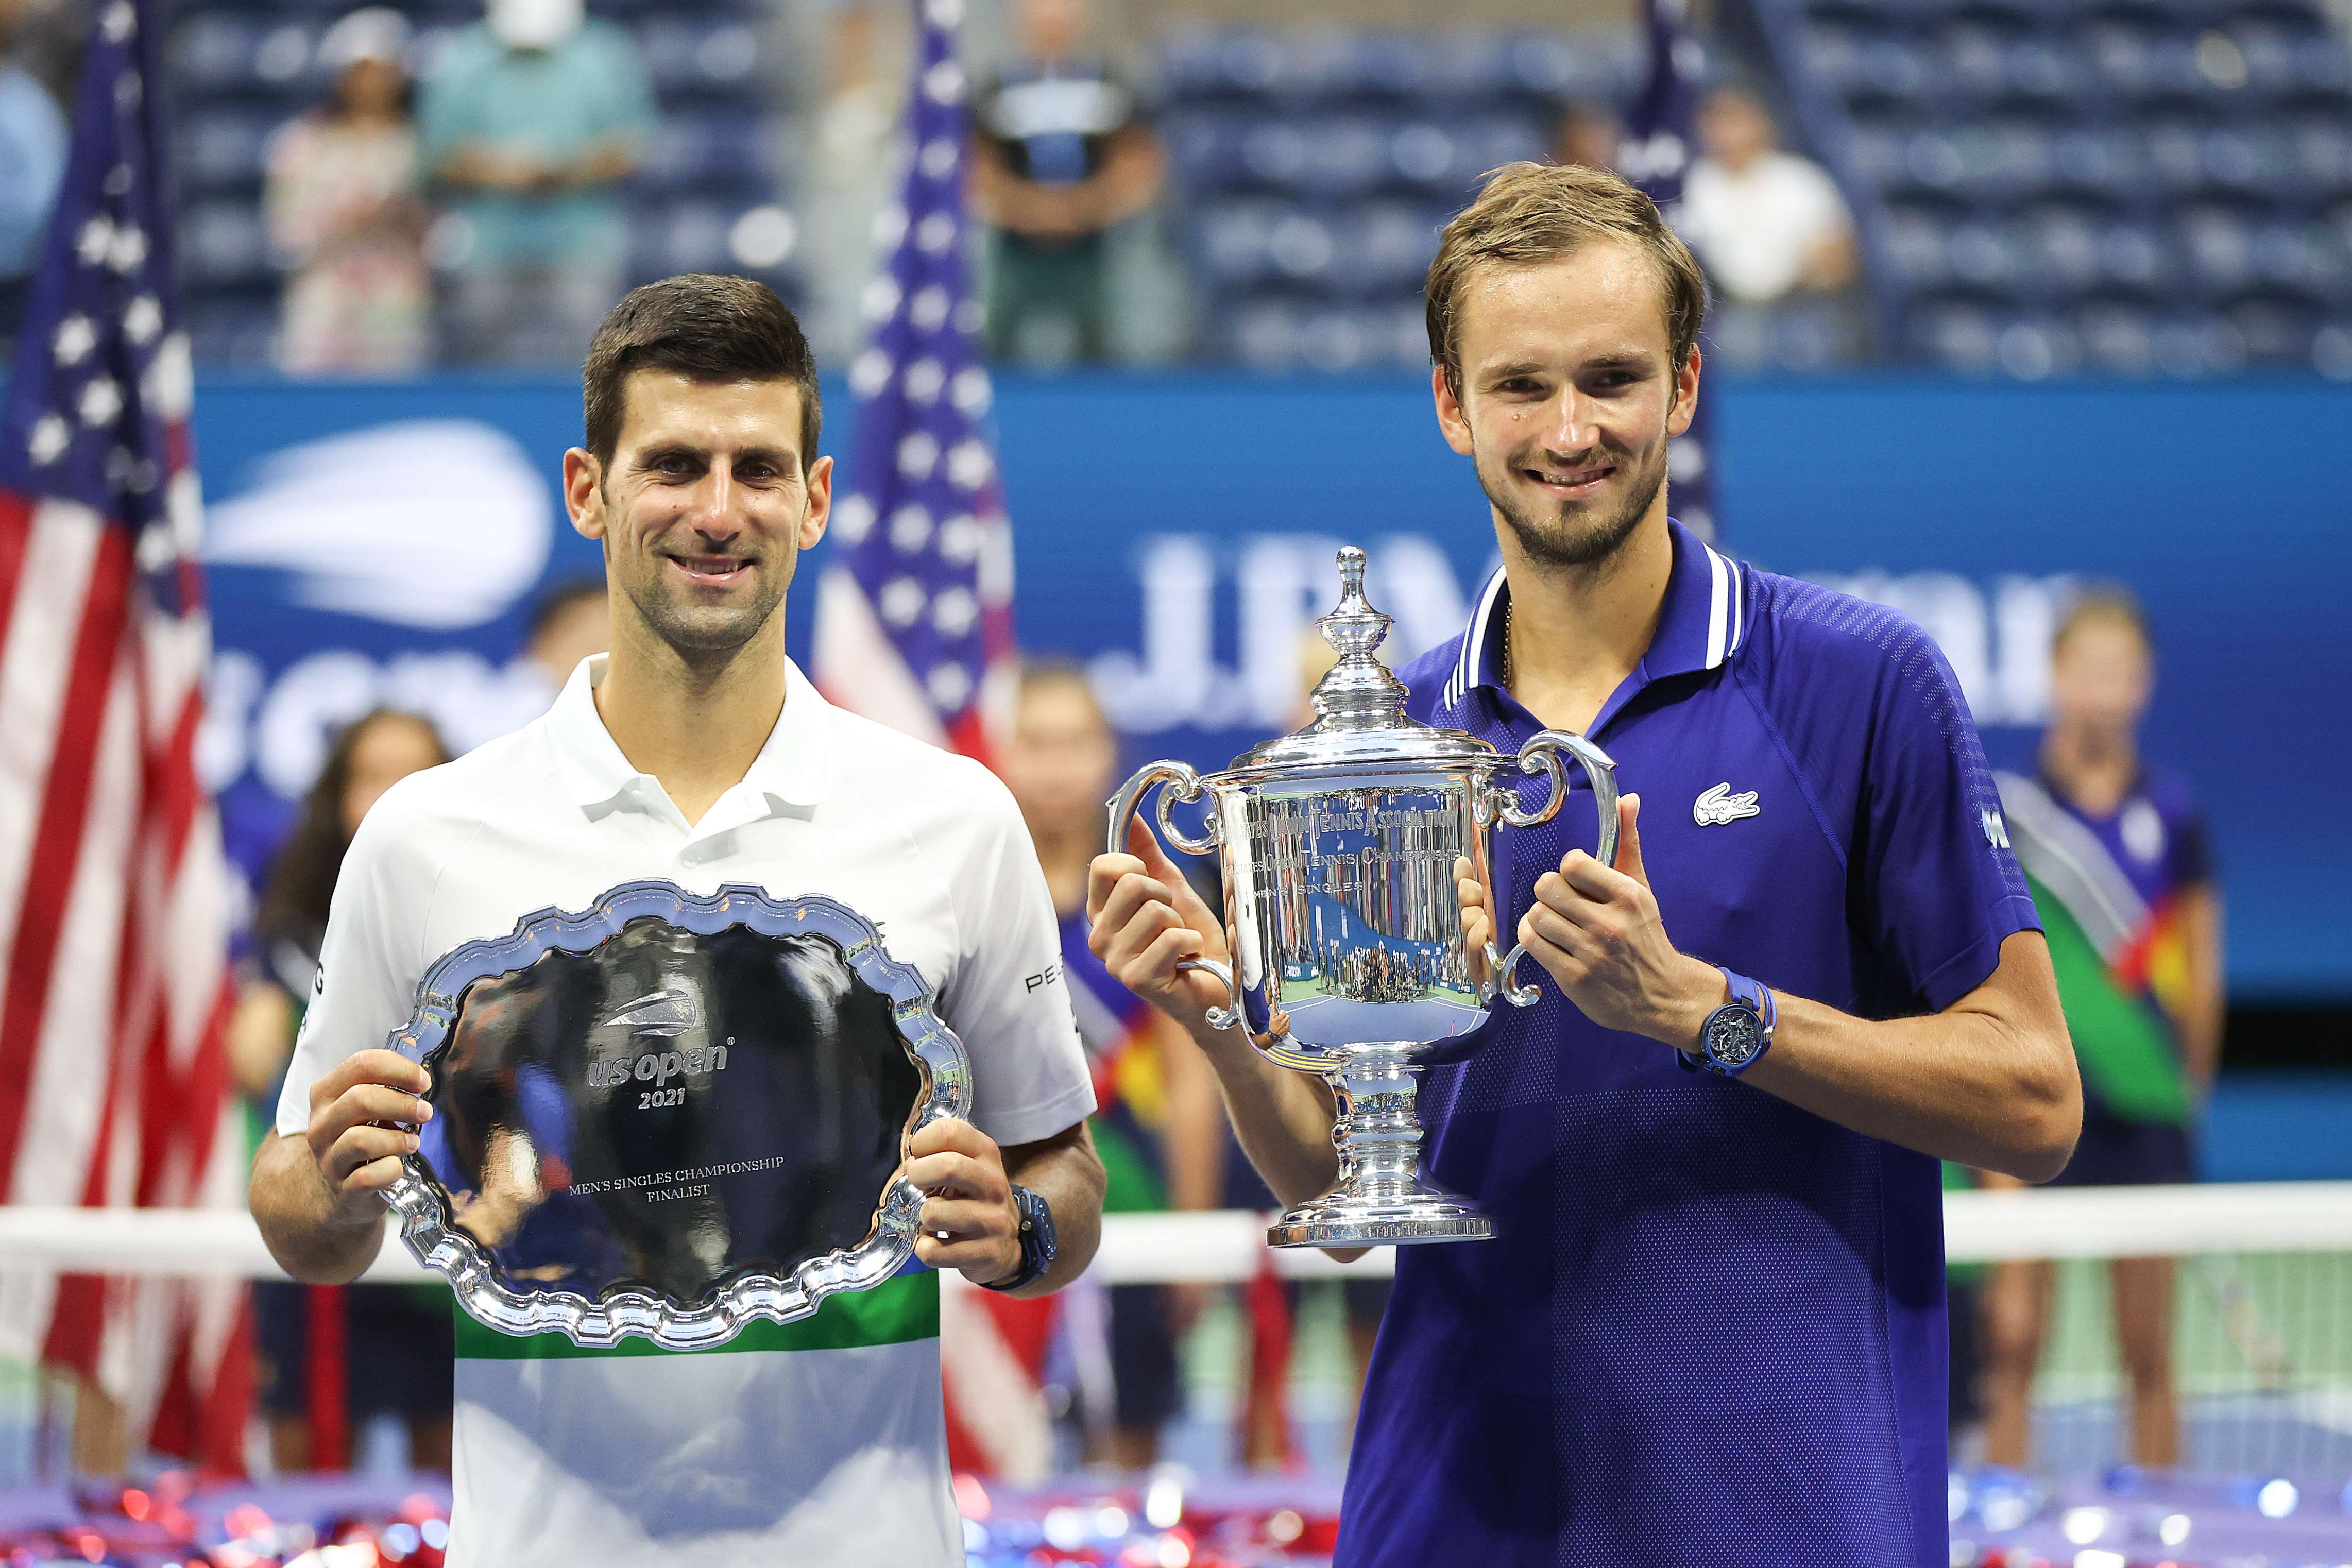 (Izq-Der) Novak Djokovic sostiene el trofeo del segundo lugar junto al campeón Daniil Medvedev después de ganar el US Open en el USTA Billie Jean King National Tennis Center. (Foto Prensa Libre: AFP)
== FOR NEWSPAPERS, INTERNET, TELCOS & TELEVISION USE ONLY ==